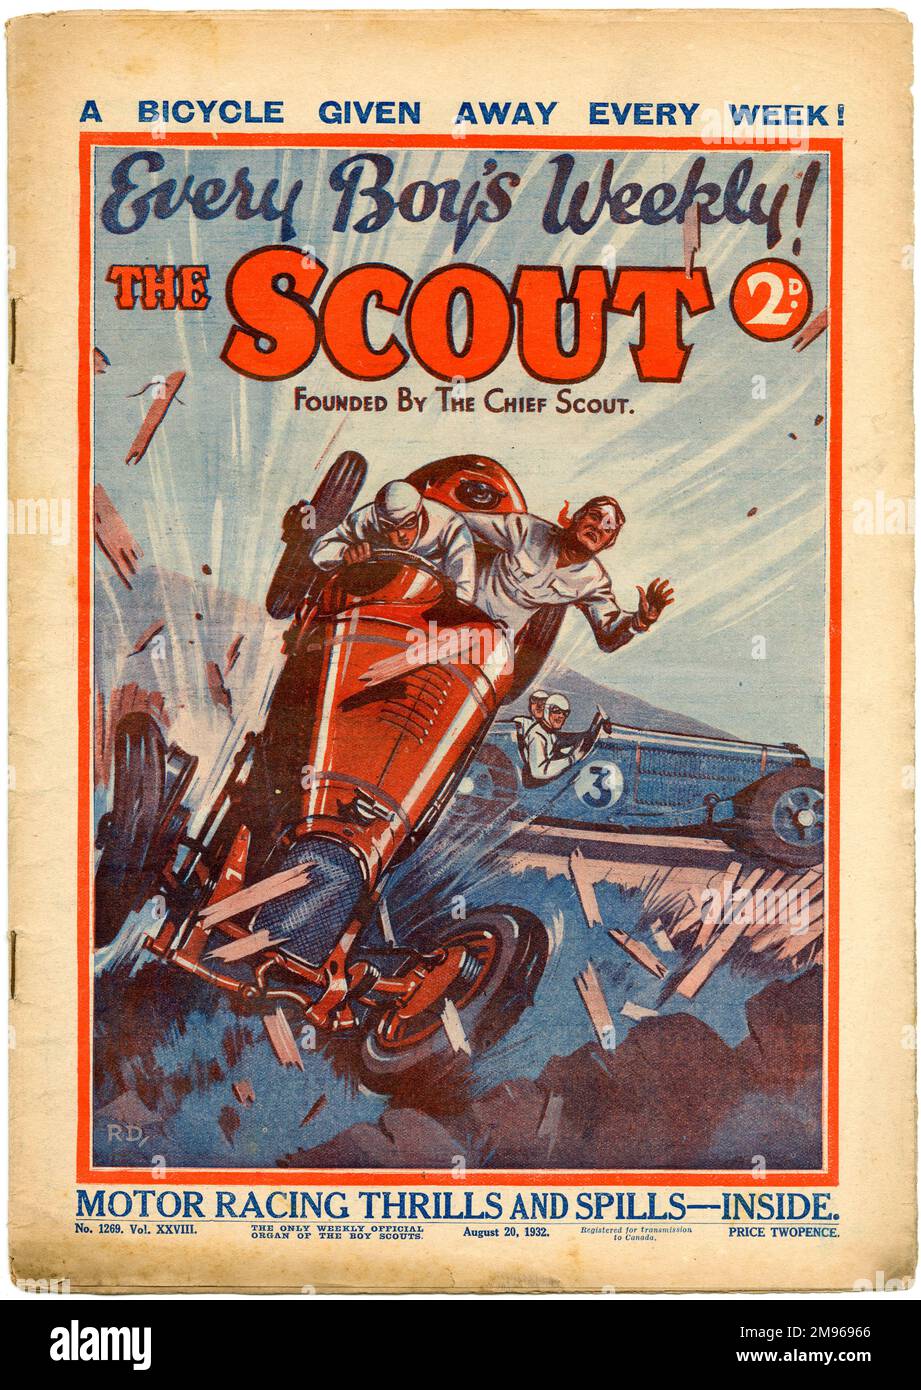 Copertina anteriore della rivista Scout che mostra un incidente motoristico piuttosto calmoso, con più "emozioni e versamenti di motori" promessi all'interno. Foto Stock